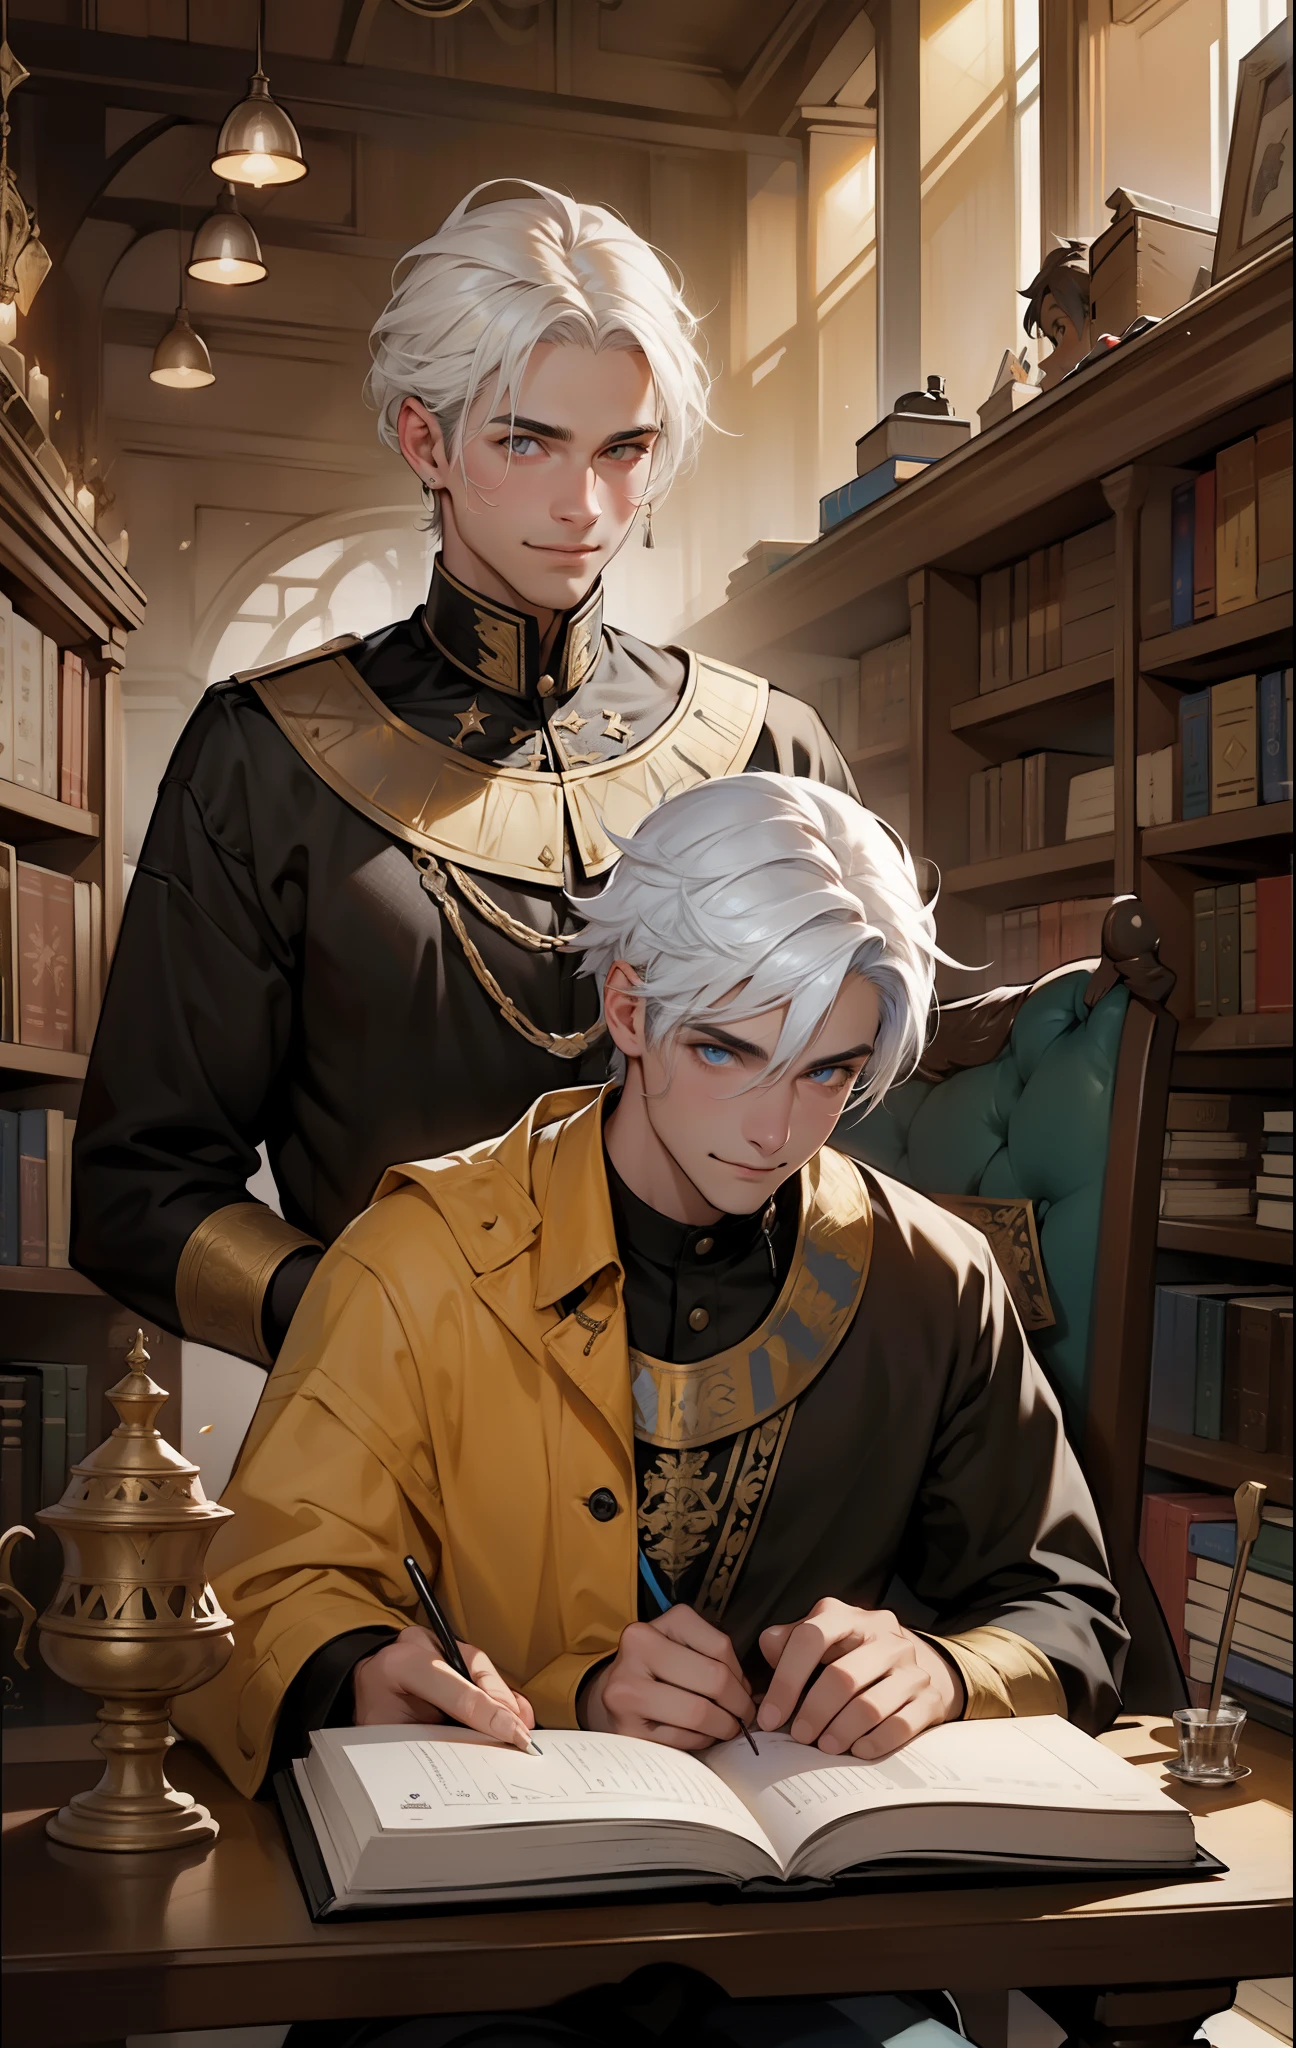 Há dois homens, um deles com um sorriso maligno e uma loucura., um sentado lendo um livro cabelo branco olhos amarelos